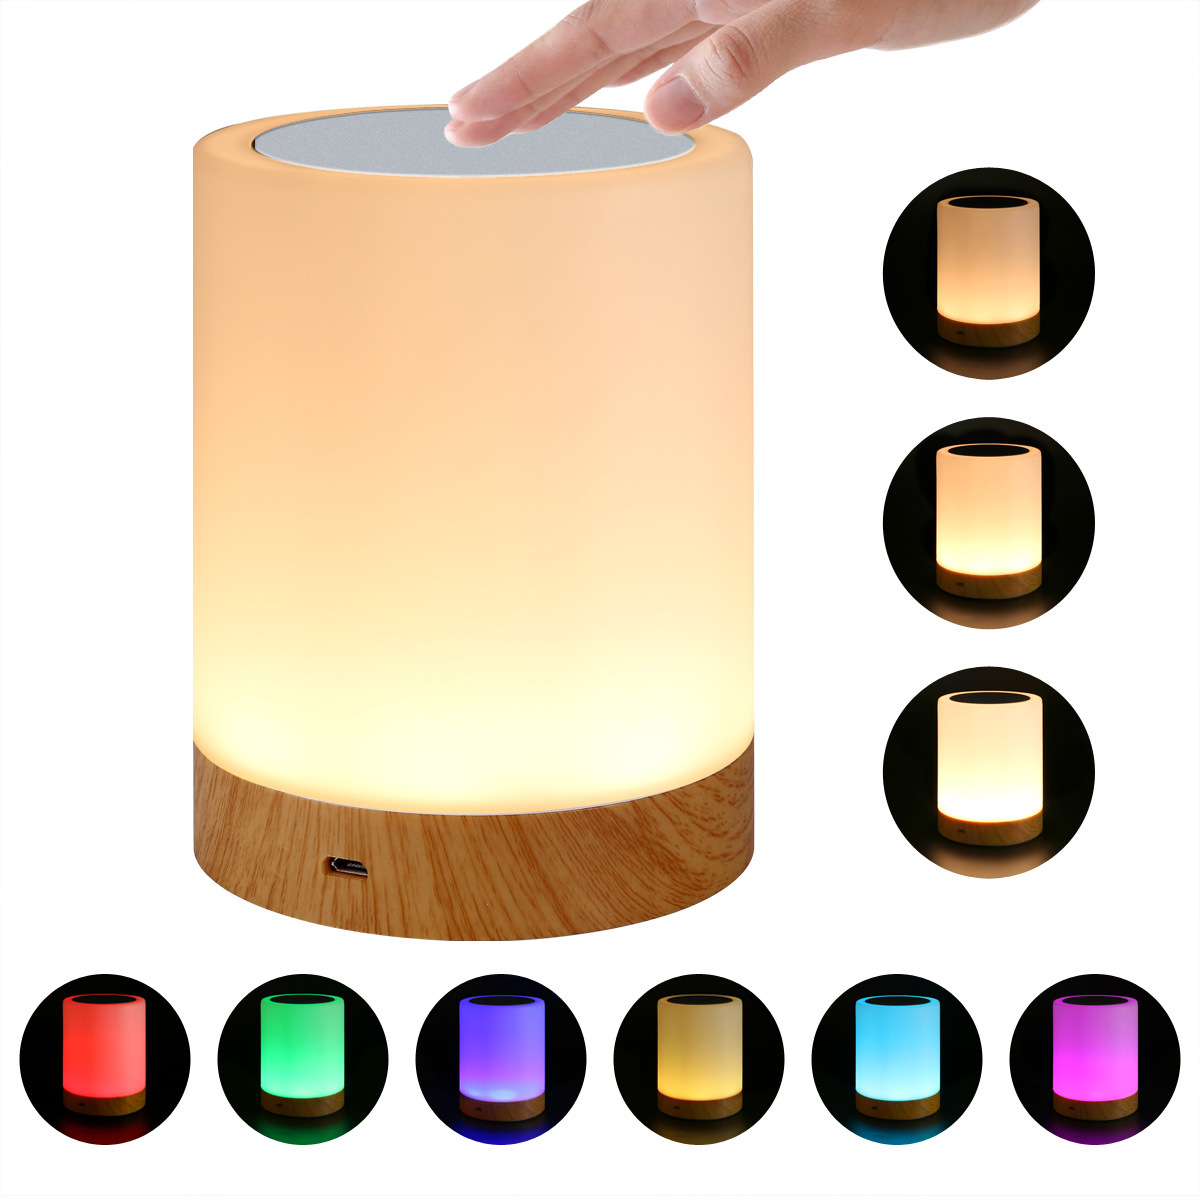 LEDナイトライト テーブルランプ usb充電 3段階調光 6色変換 タッチ式 授乳ライト 木目調